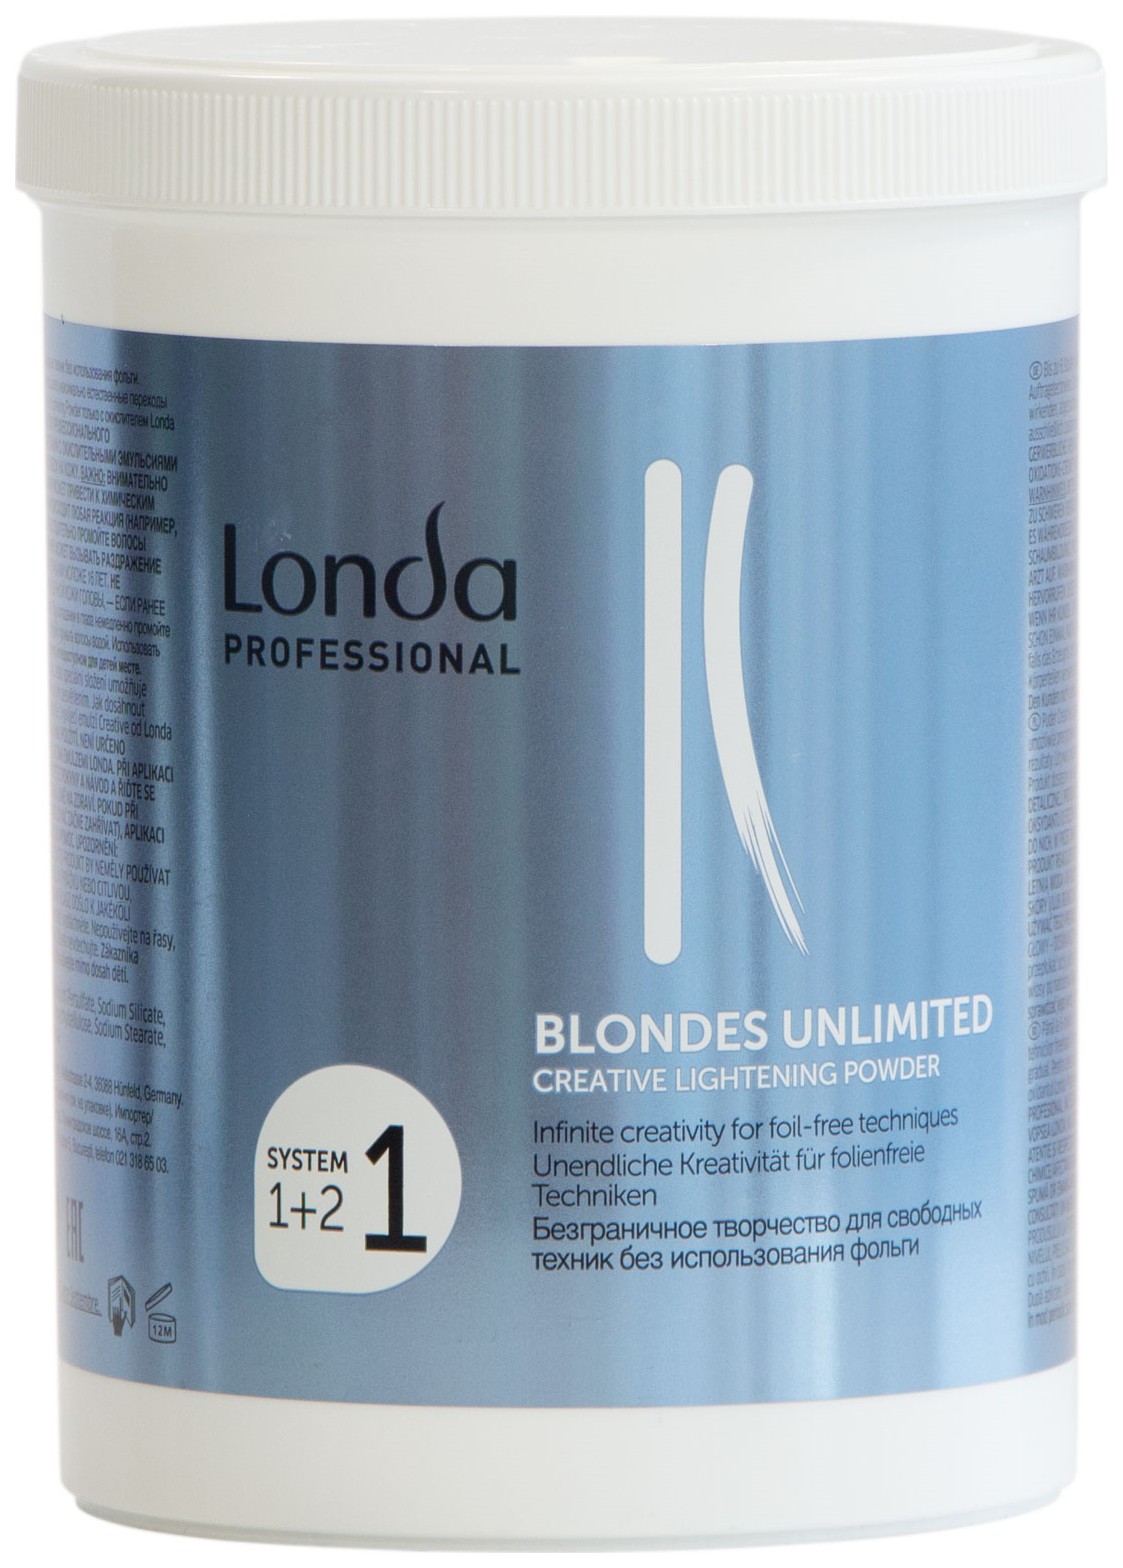 Осветлитель Londa Professional Blondes Unlimited Creative Lightening Powder 400 г осветляющая пудра blondes unlimited